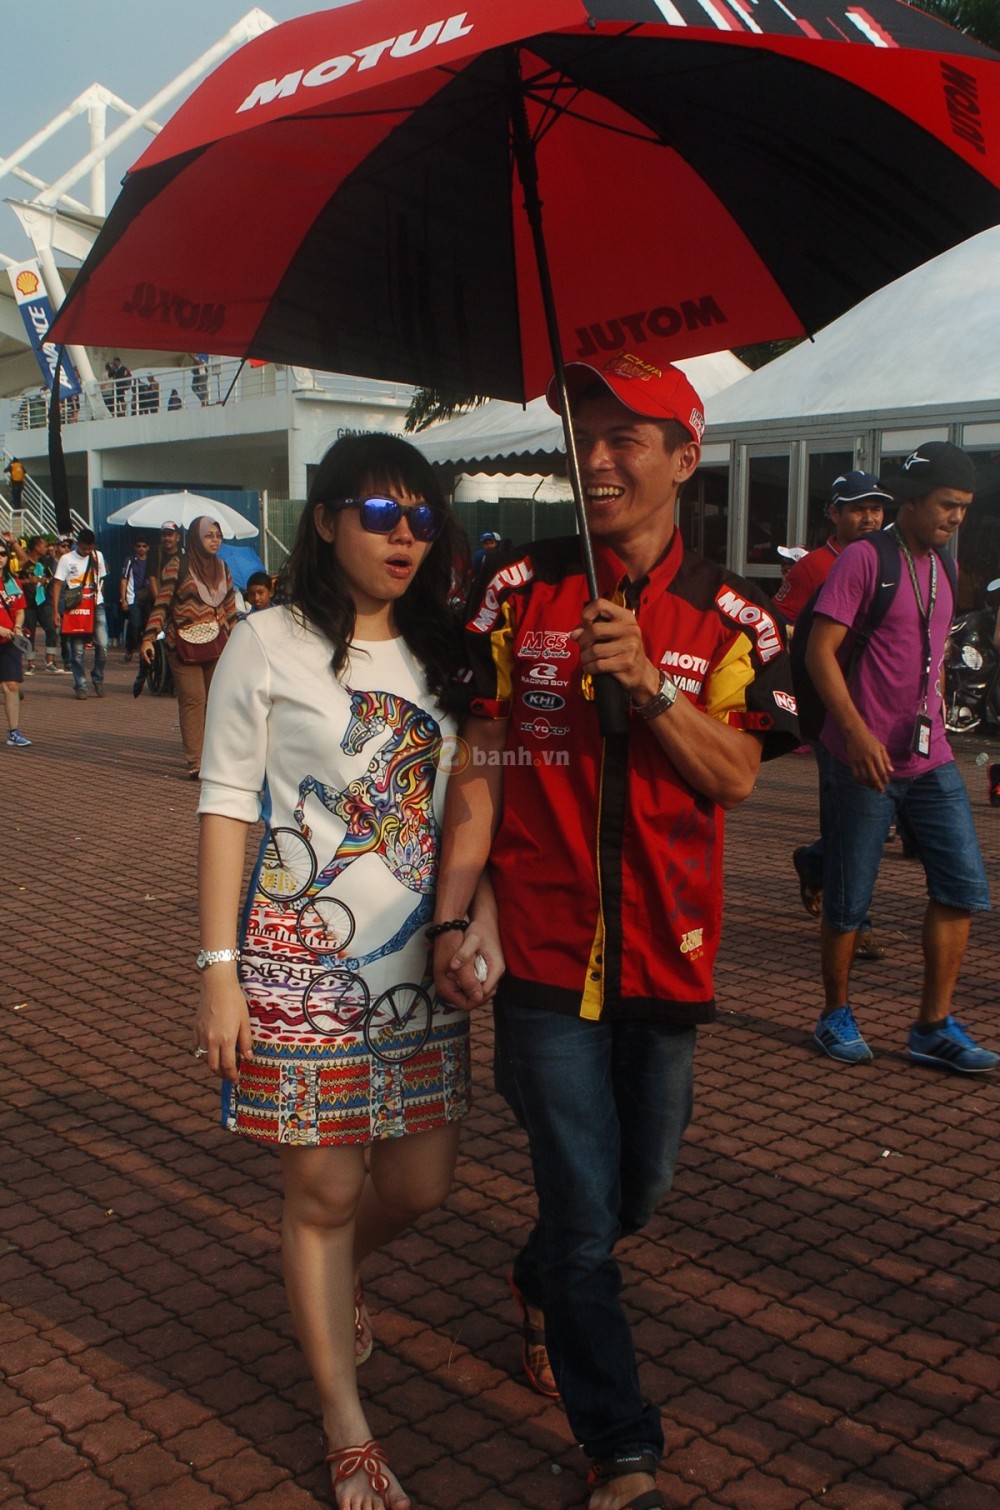 Hinh anh va Clip Moto GP 2014 do thanh vien 2banh ghi lai tu truong dua Sepang - 2